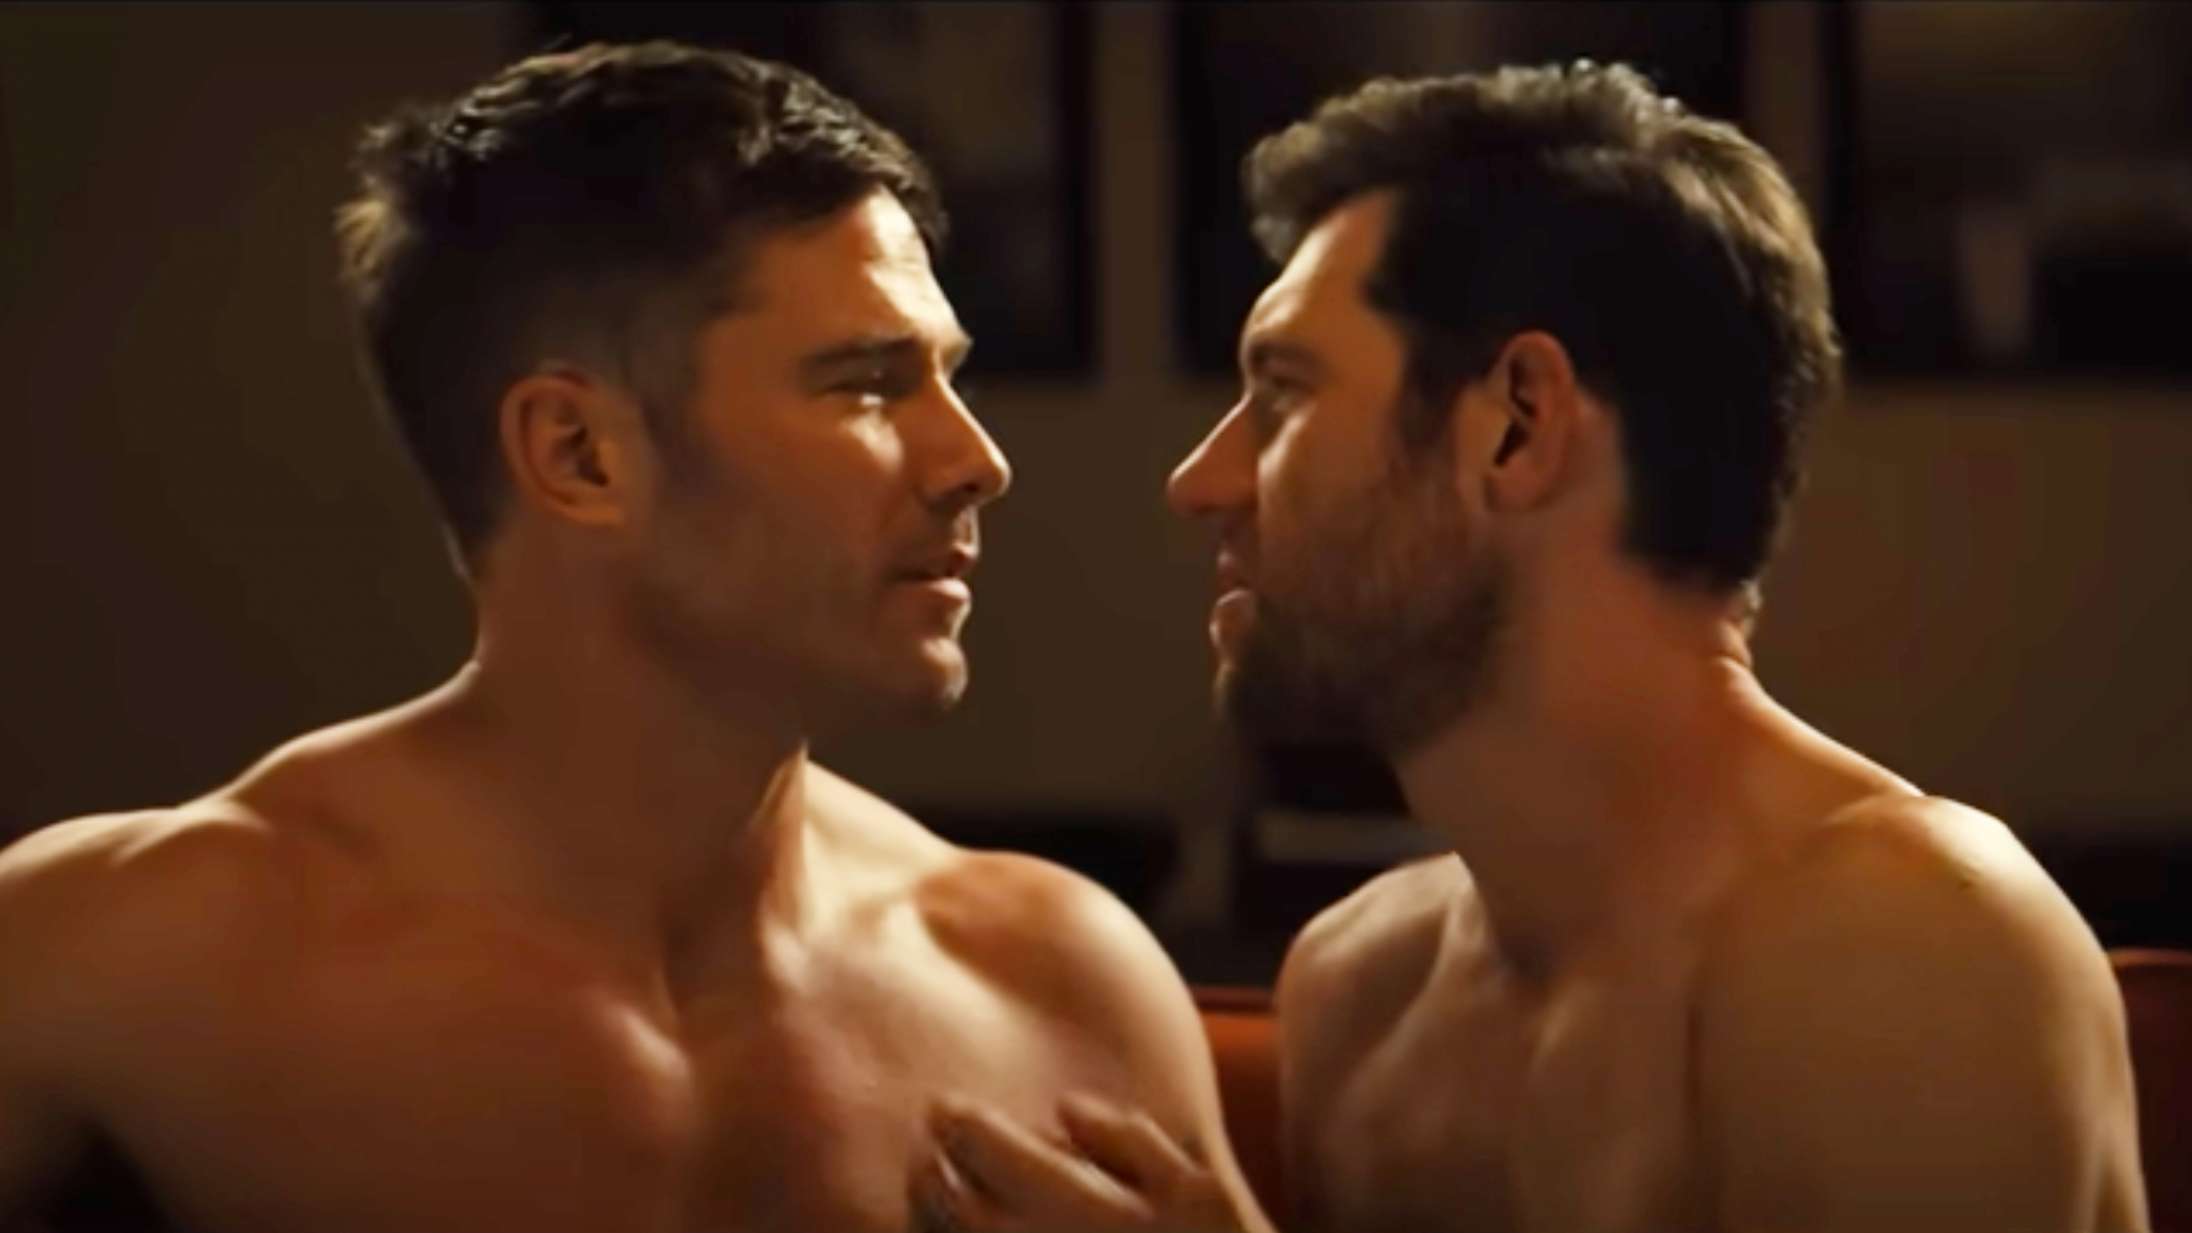 Komedien ‘Bros’ om homoseksuel kærlighed er allerede historisk – se den sprudlende trailer